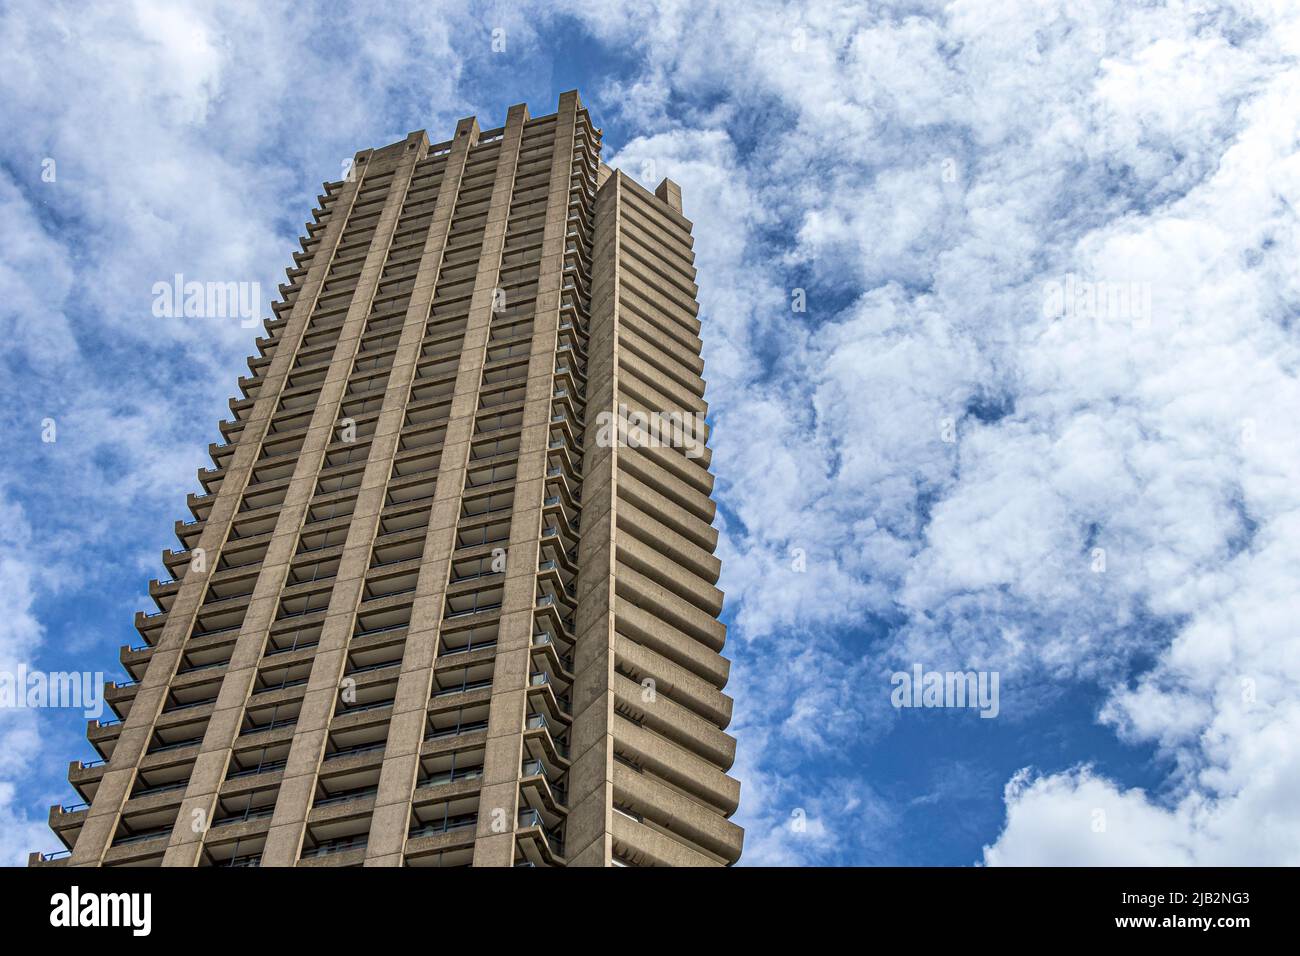 Una de las 3 torres de diseño arquitectónico brutalista del Barbican Center, un complejo residencial de lujo en la ciudad de Londres, Londres EC2 Foto de stock